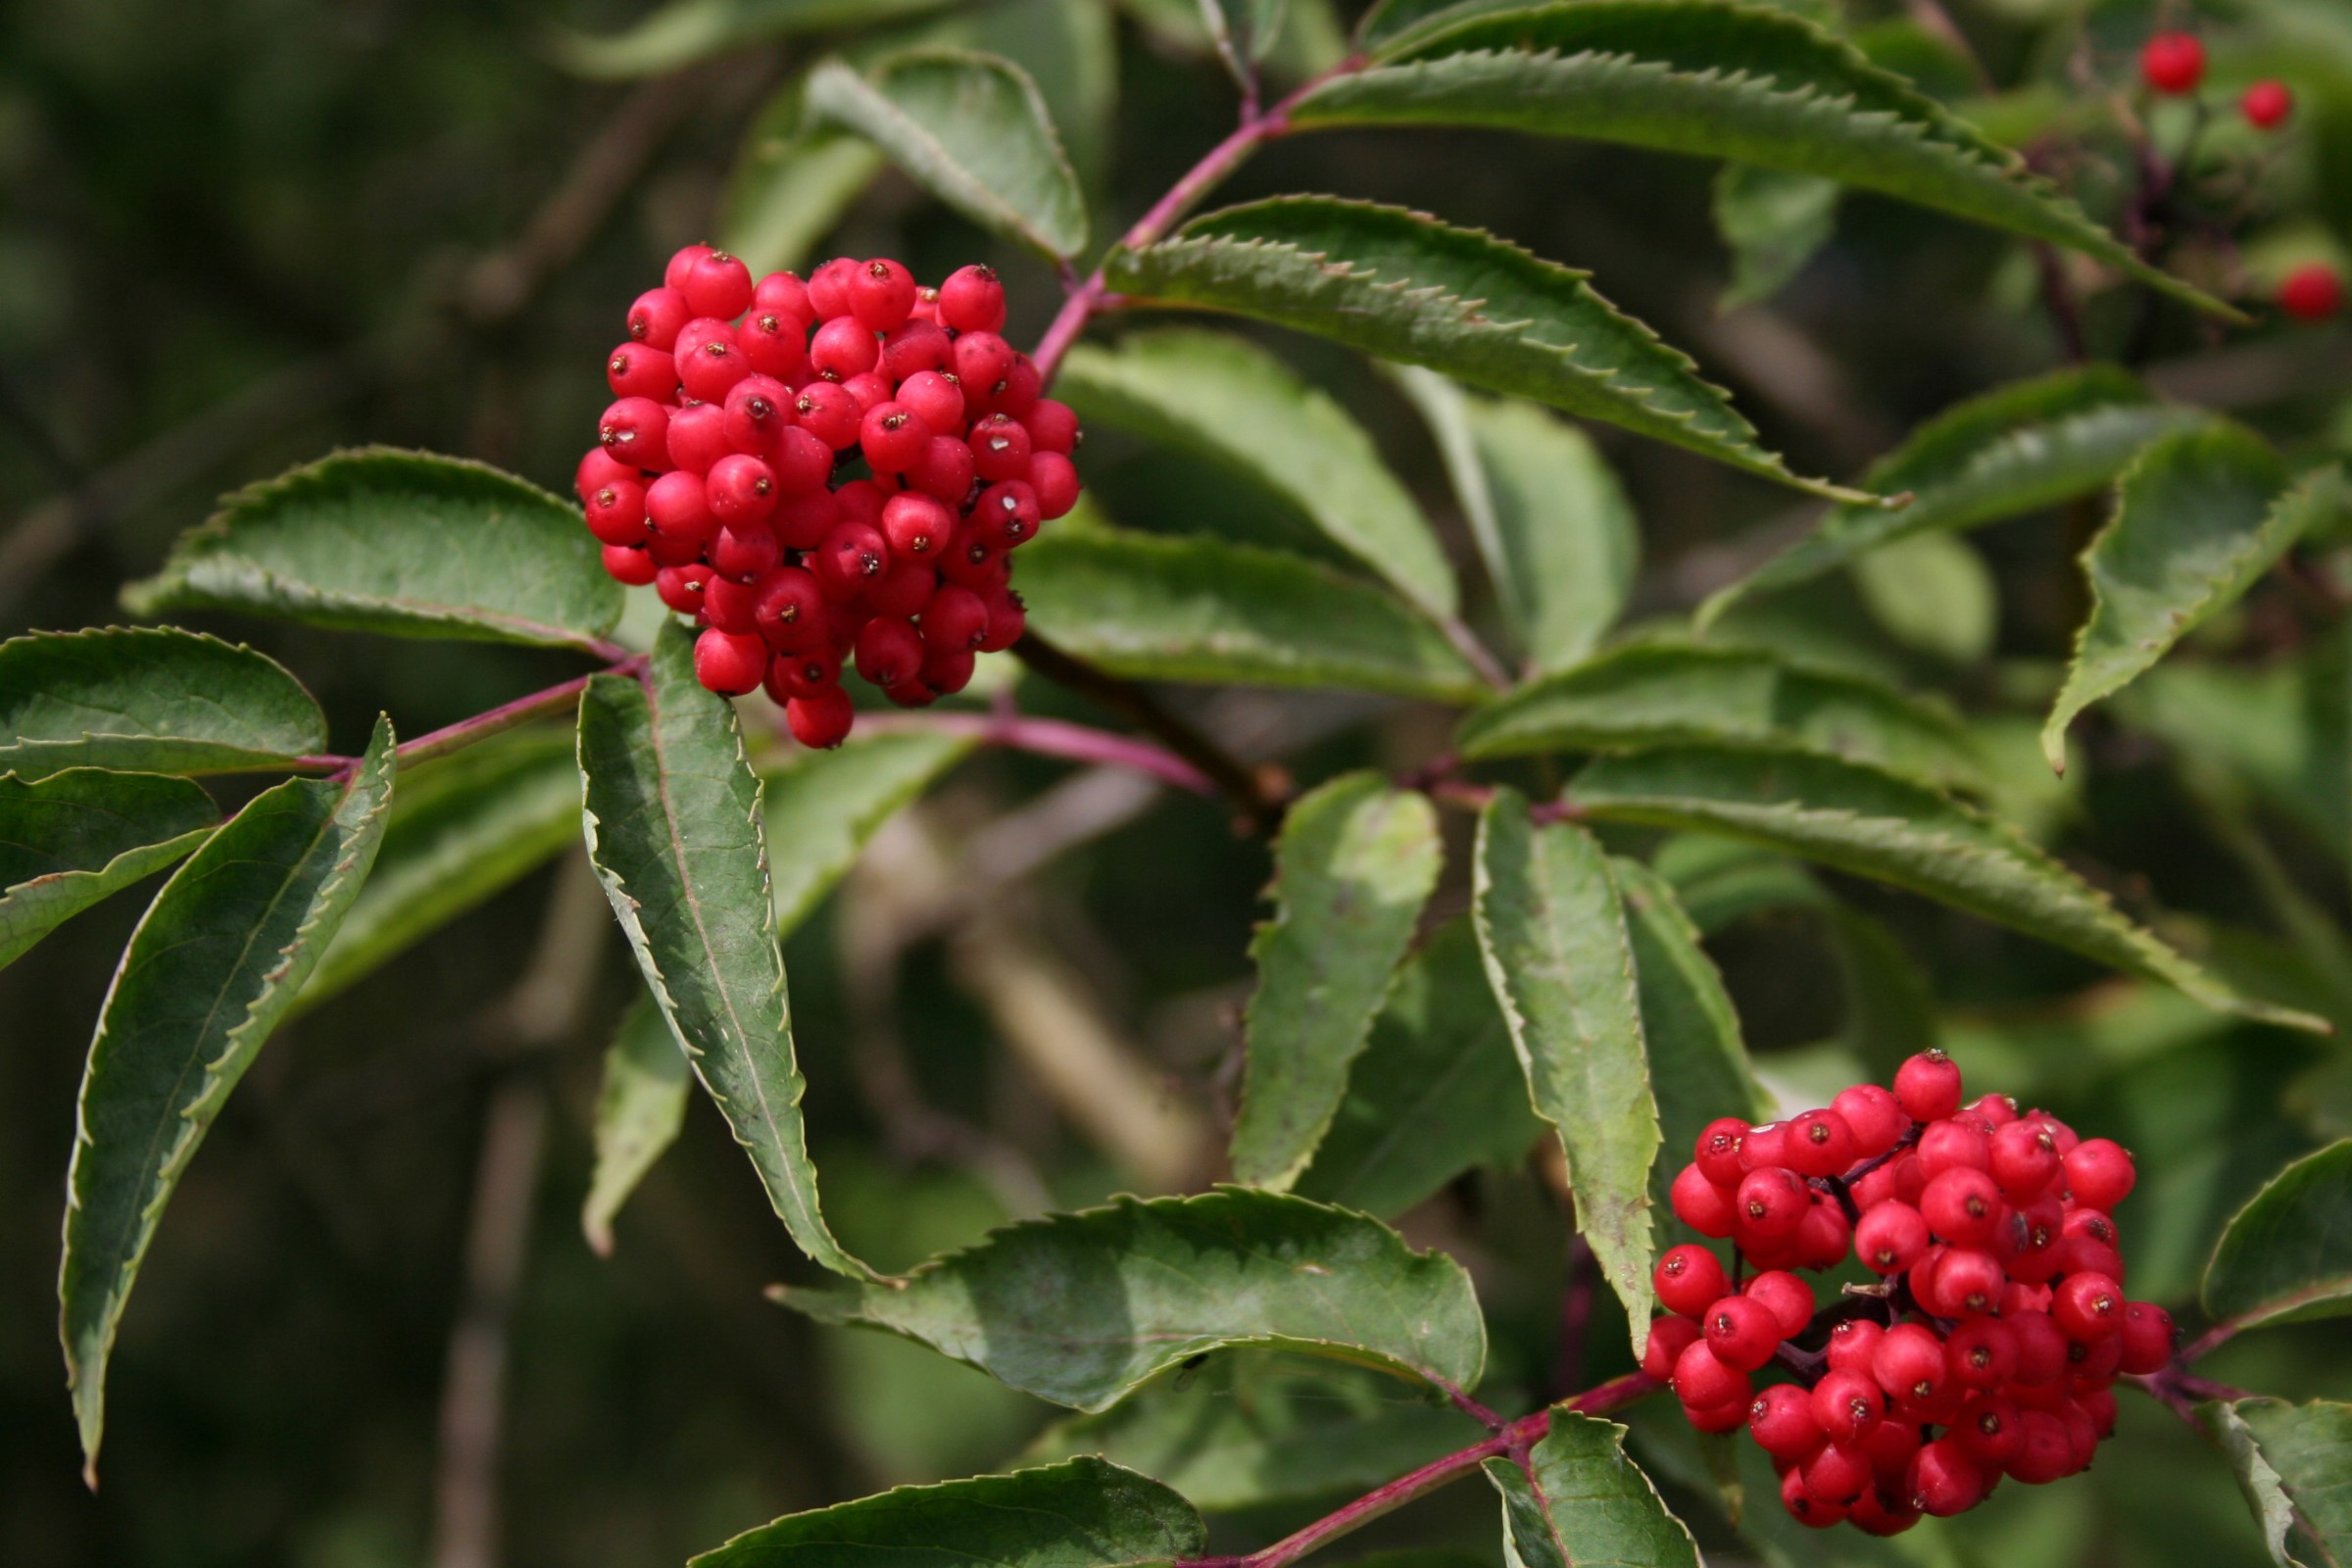 Planten har rødbrun marg på kvistene med røde bær i tette klaser.